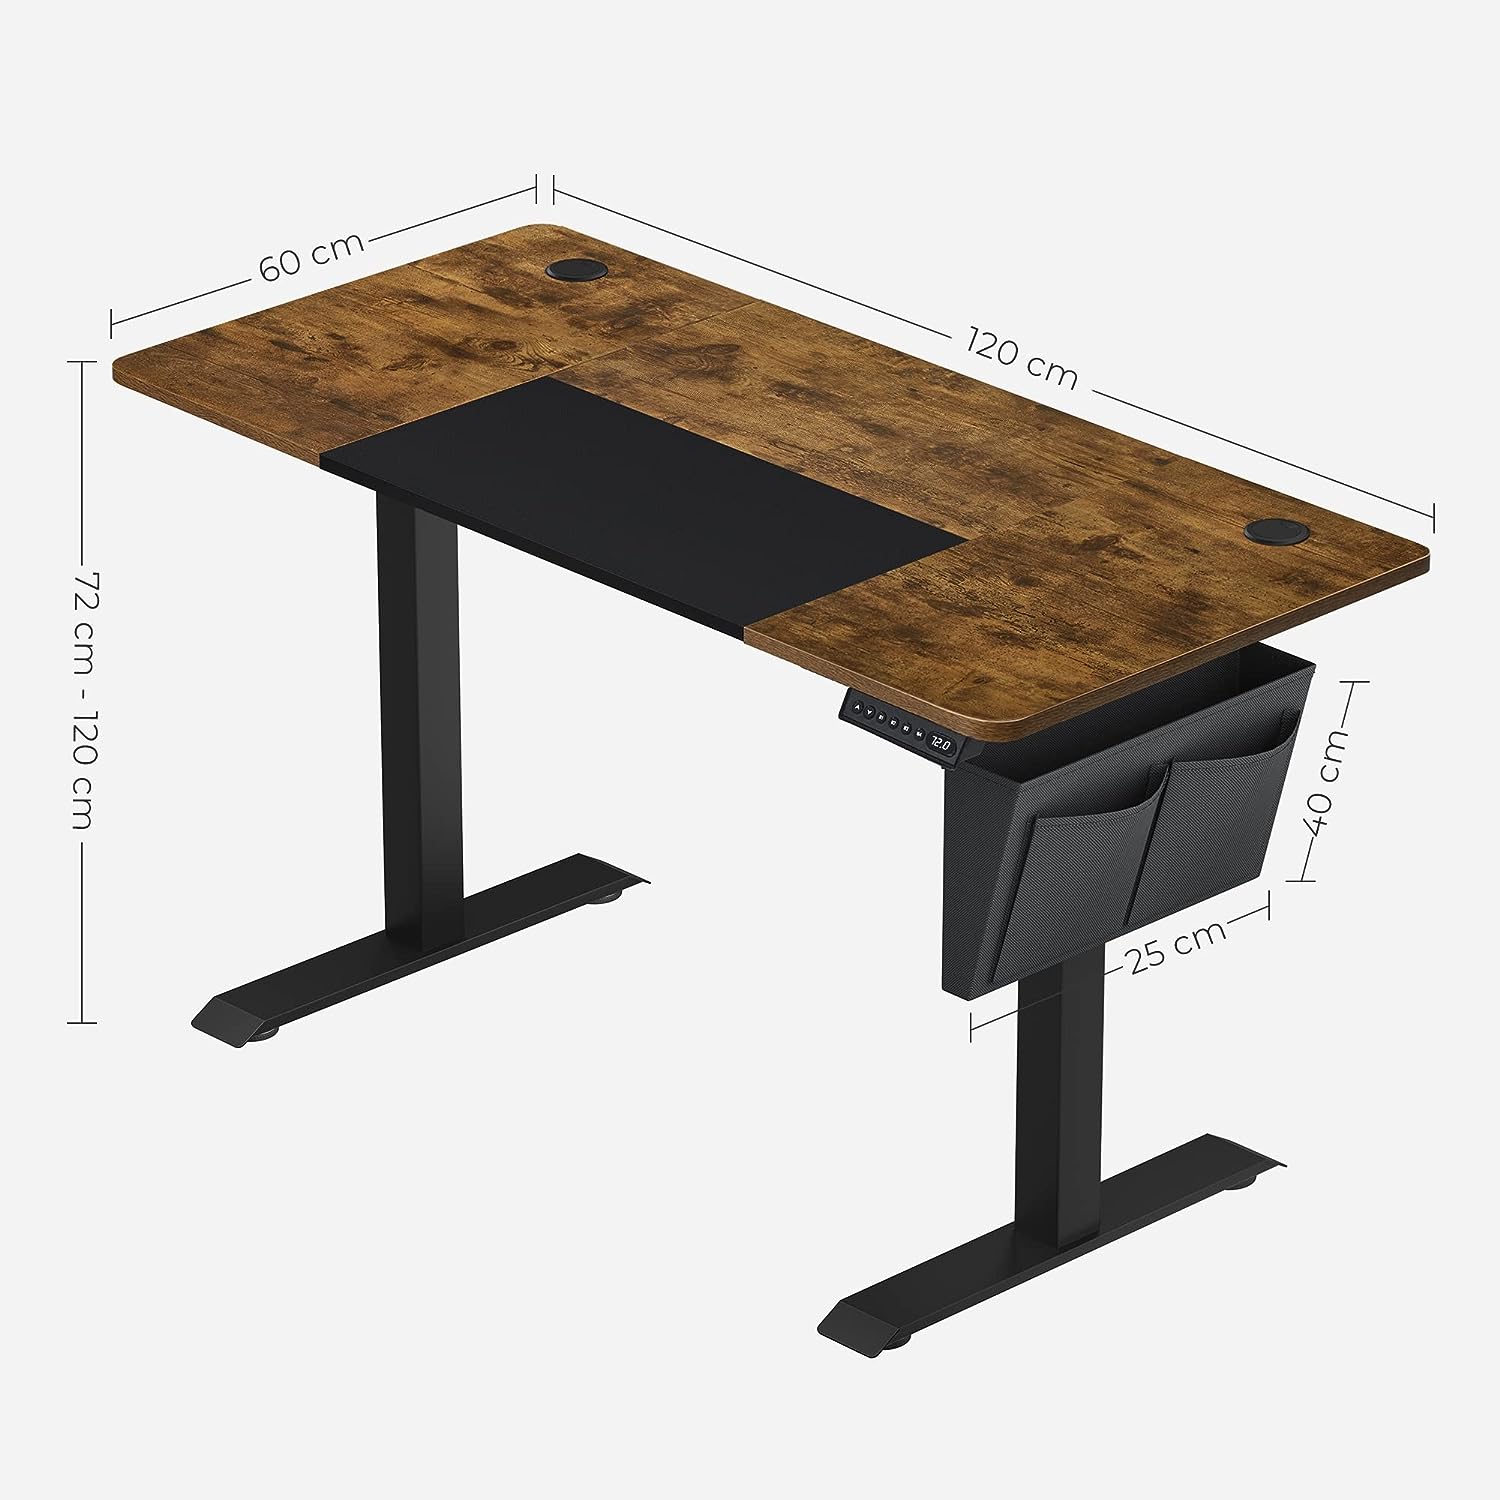 میز تحریر با قابلیت تنظیم ارتفاع مدل SONGMICS Height-adjustable desk - ارسال 10 الی 15 روز کاری